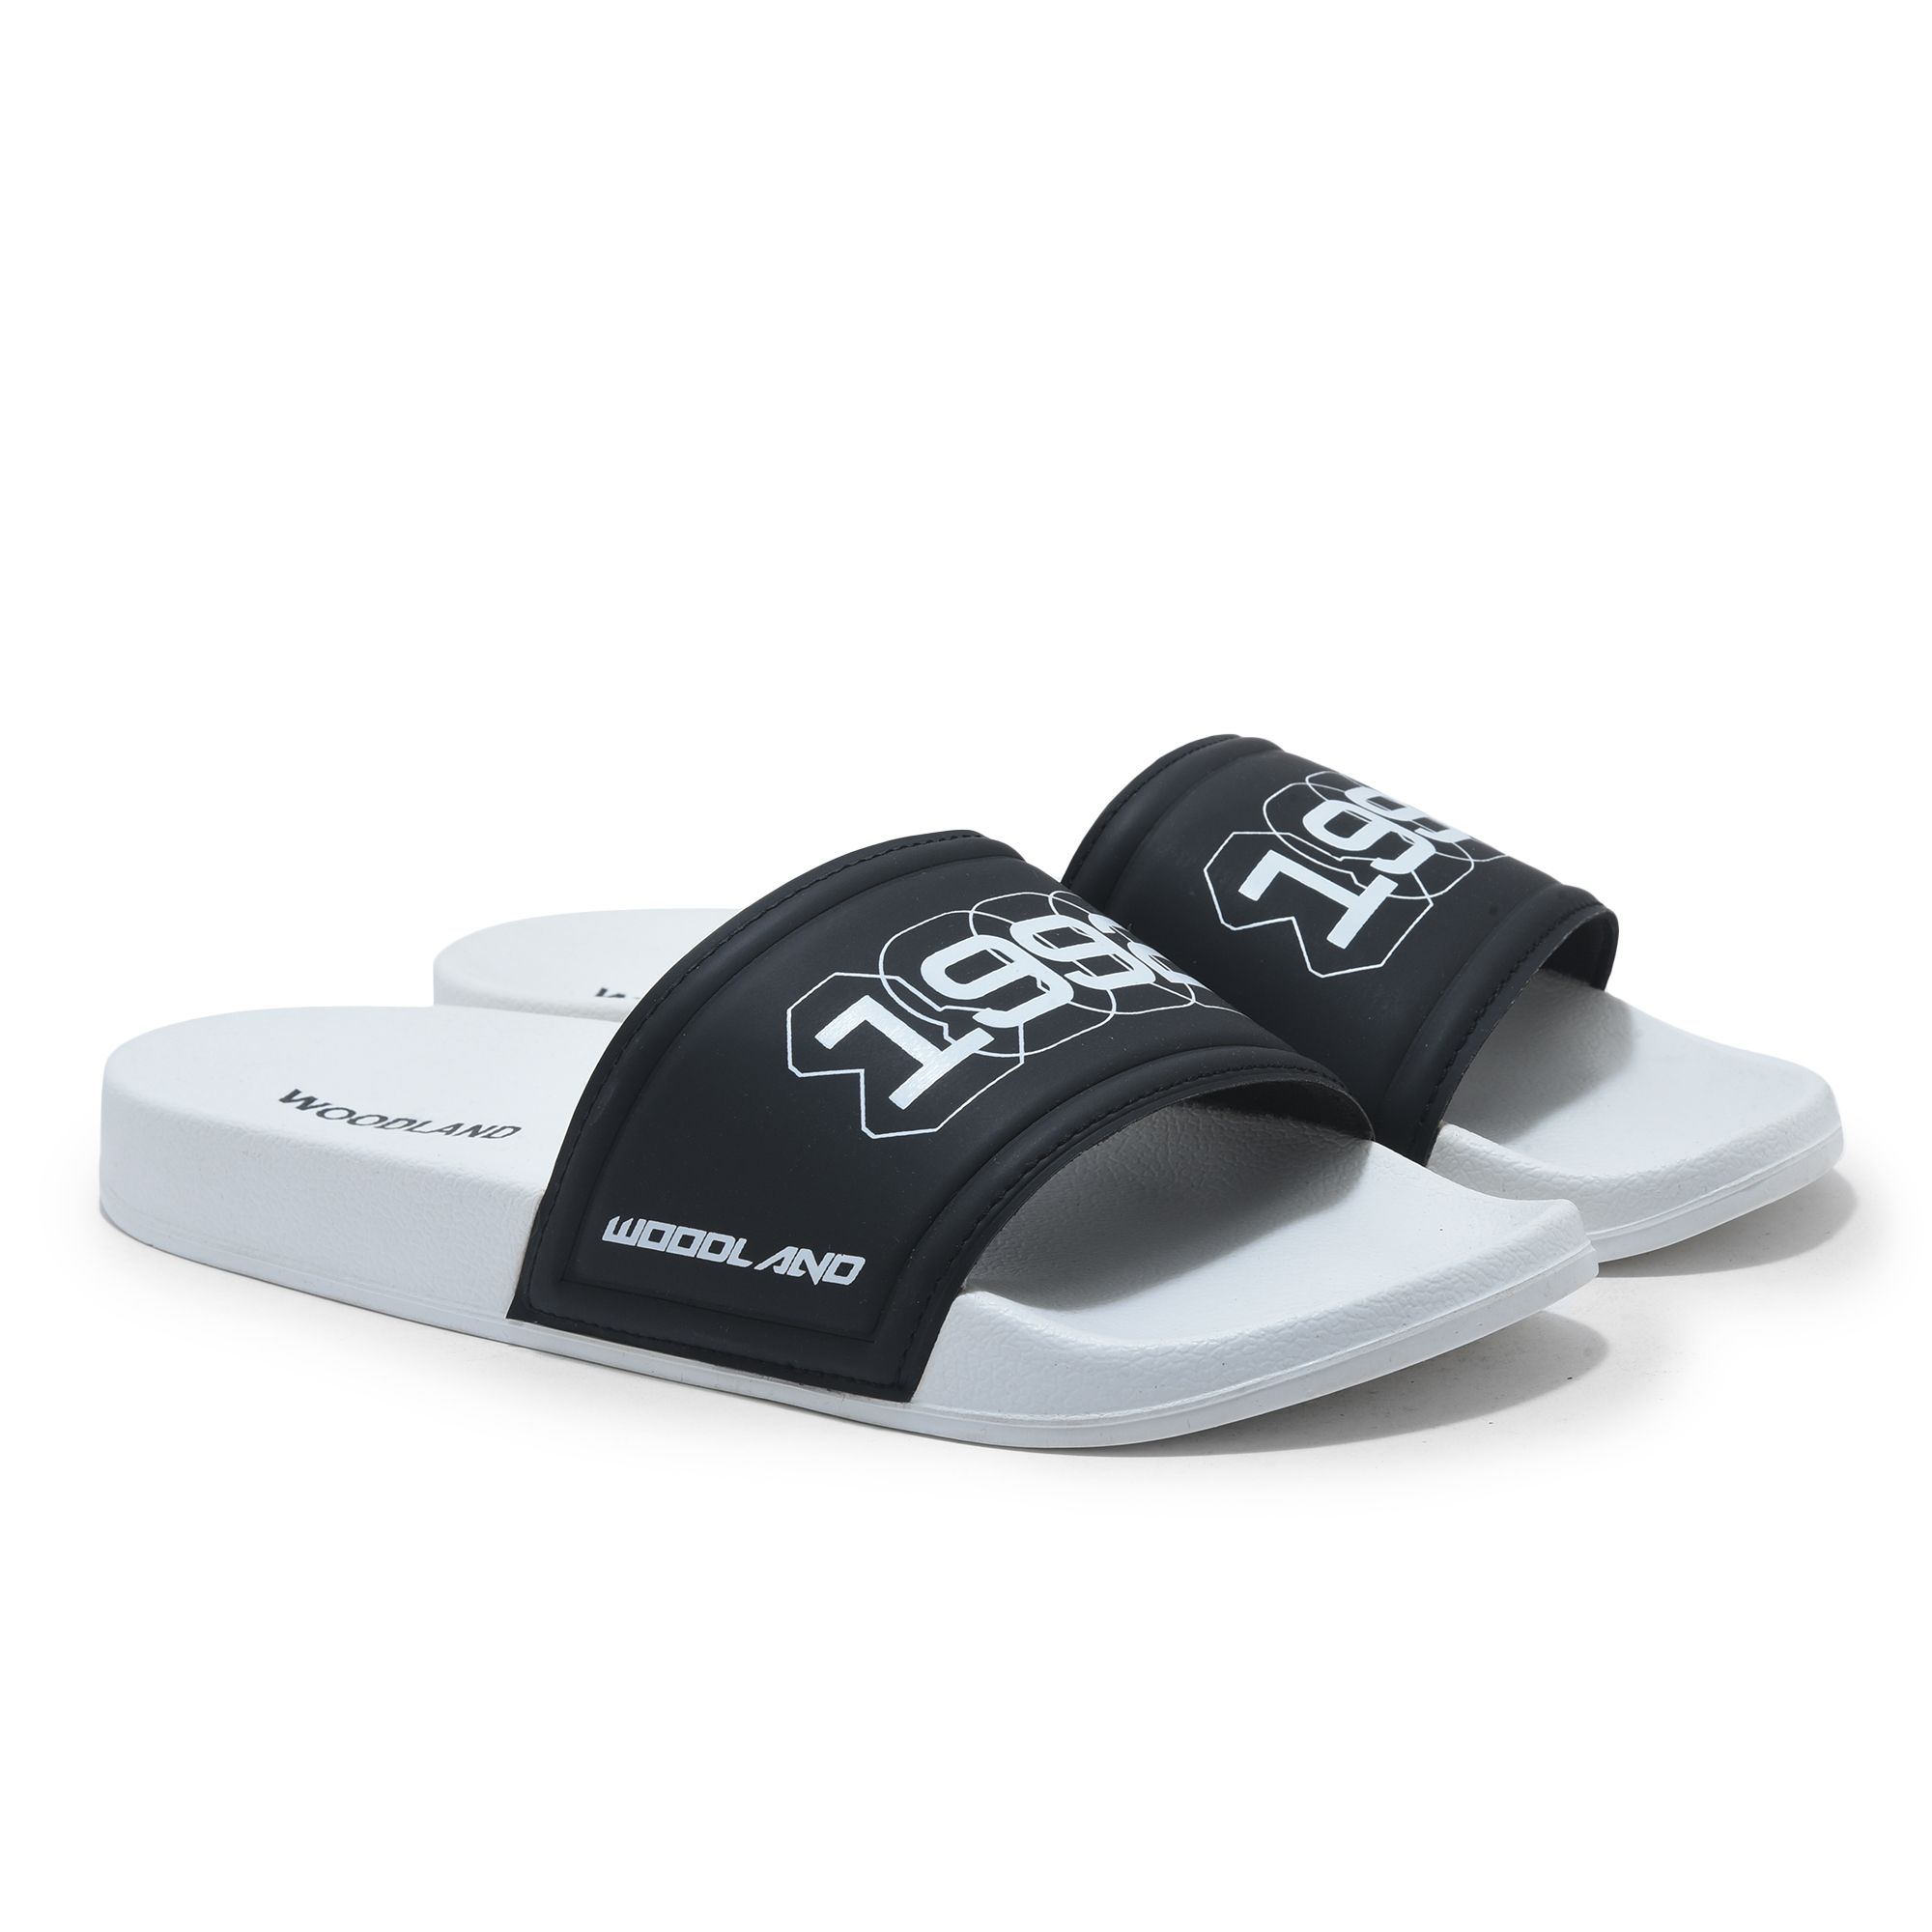 White Slide sandal for men